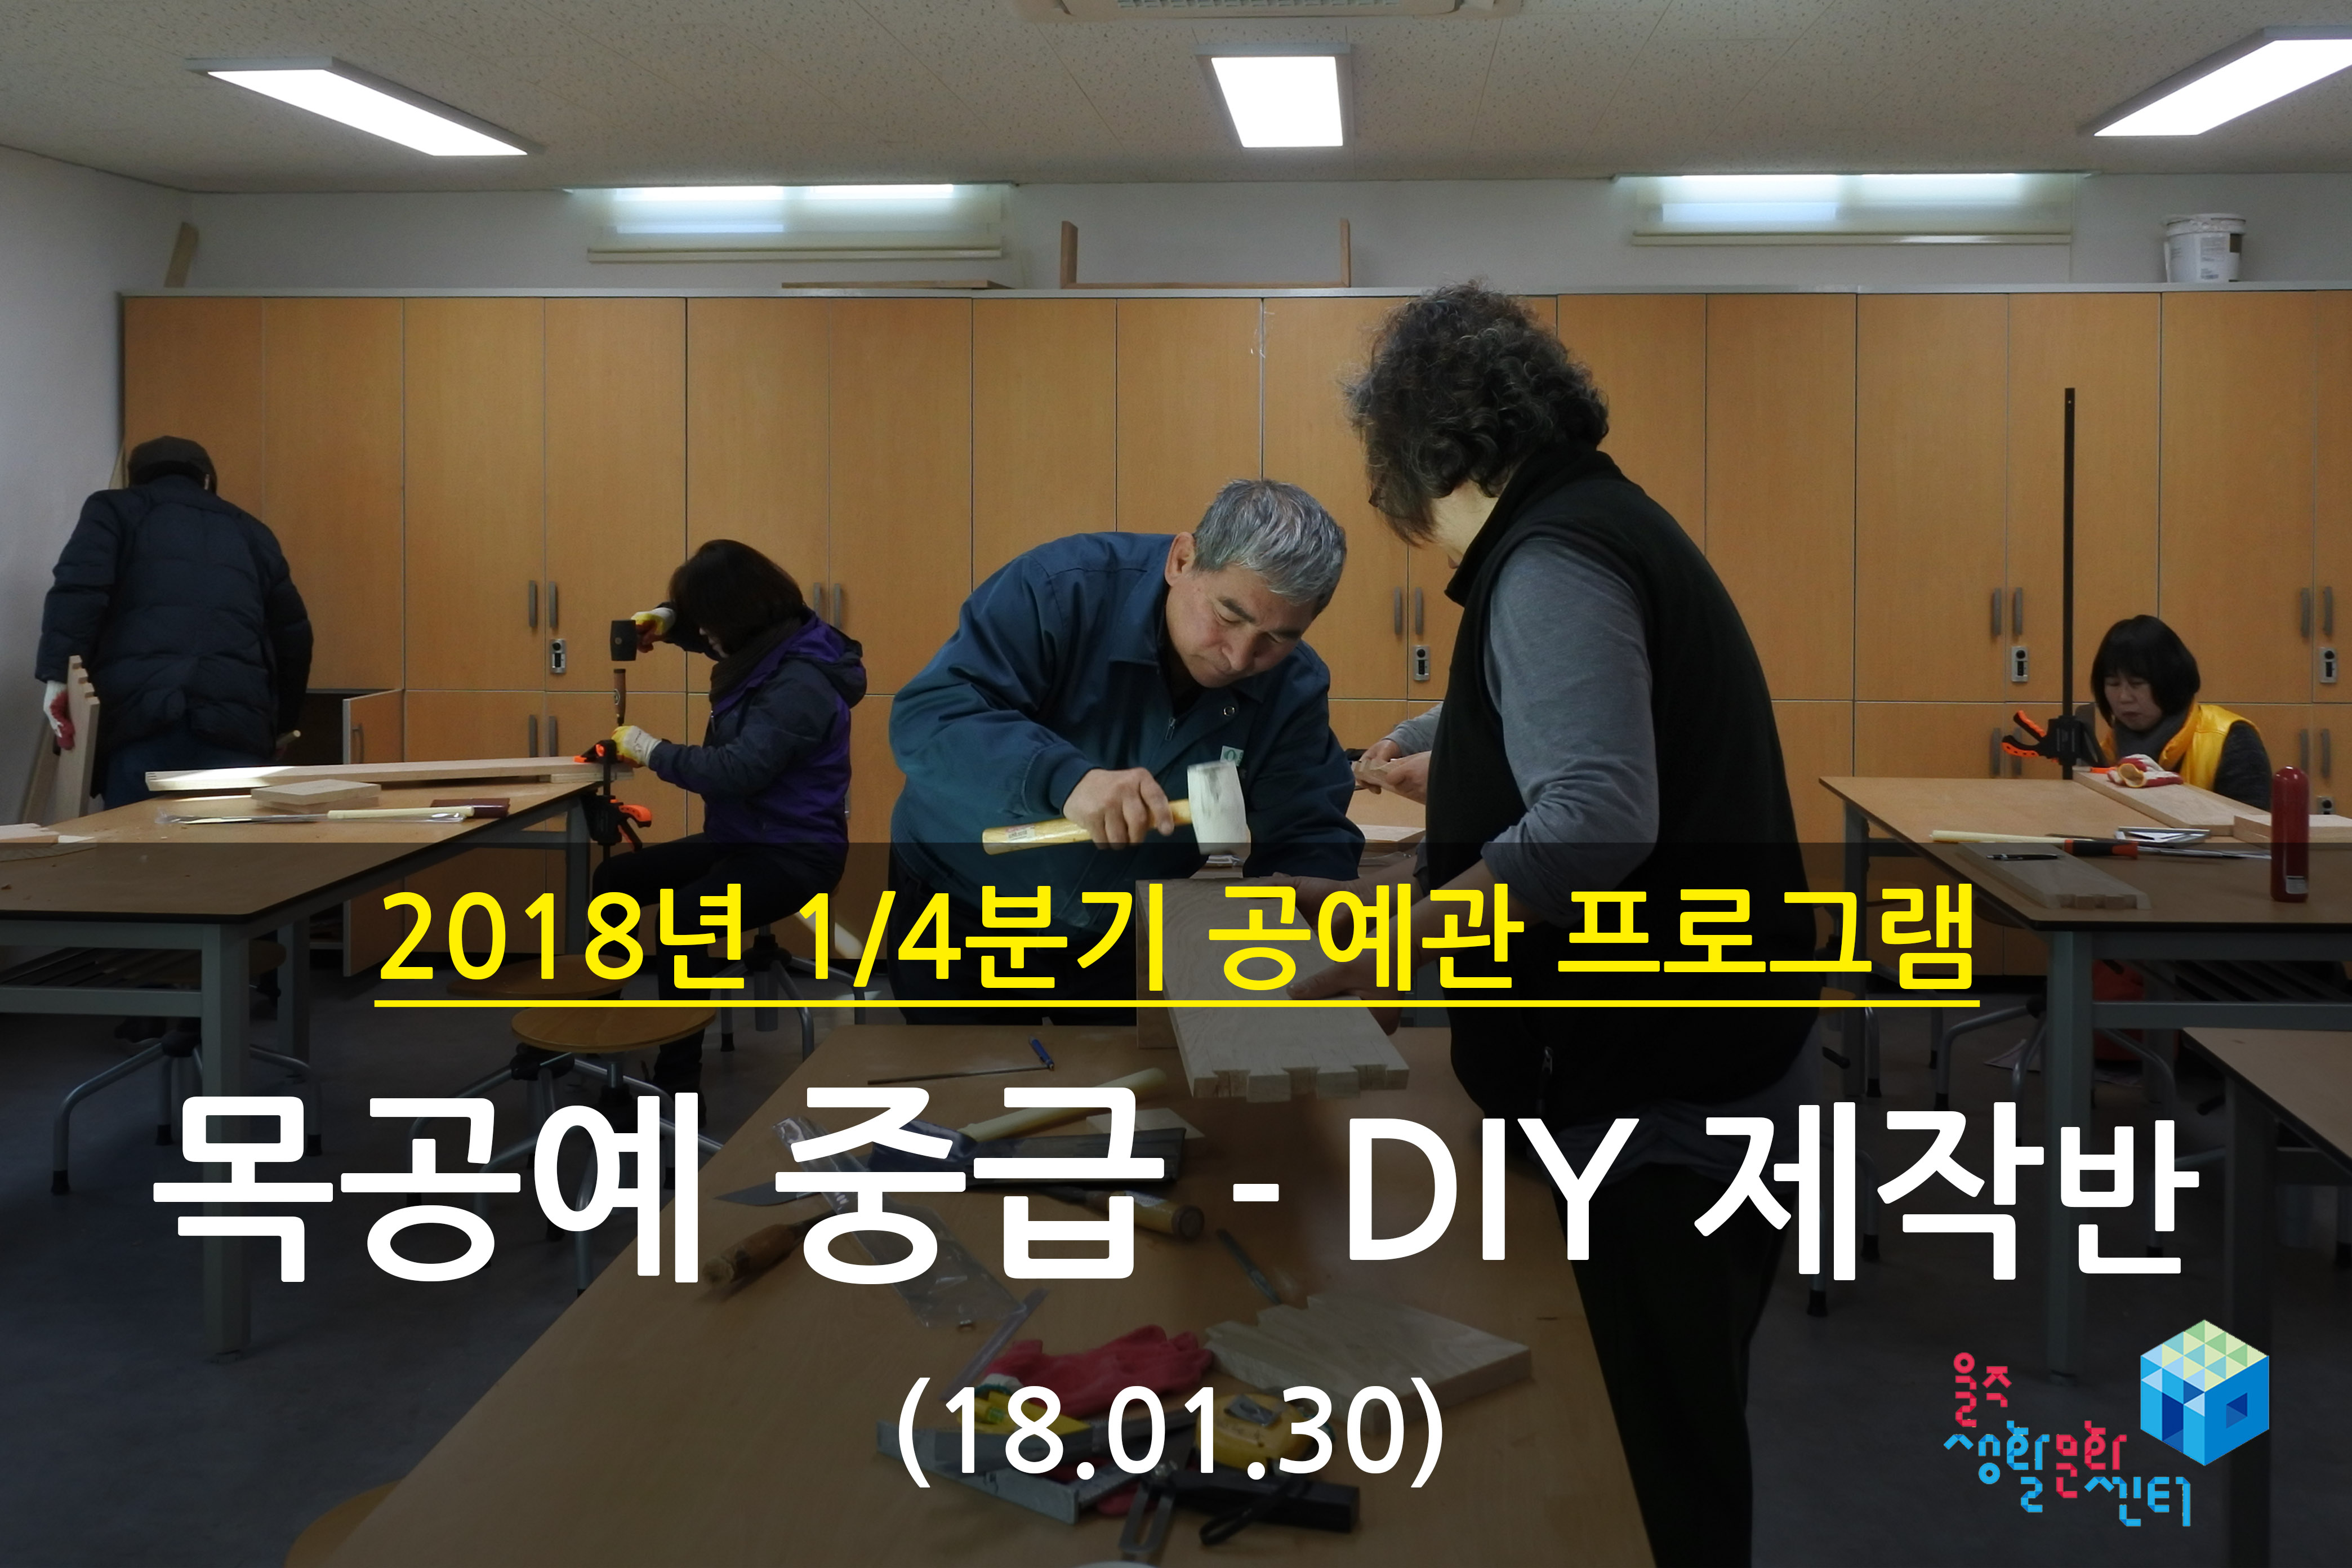 2018.01.30 _ 목공예 중급 - DIY 제작반 _ 1/4분기 4주차 수업